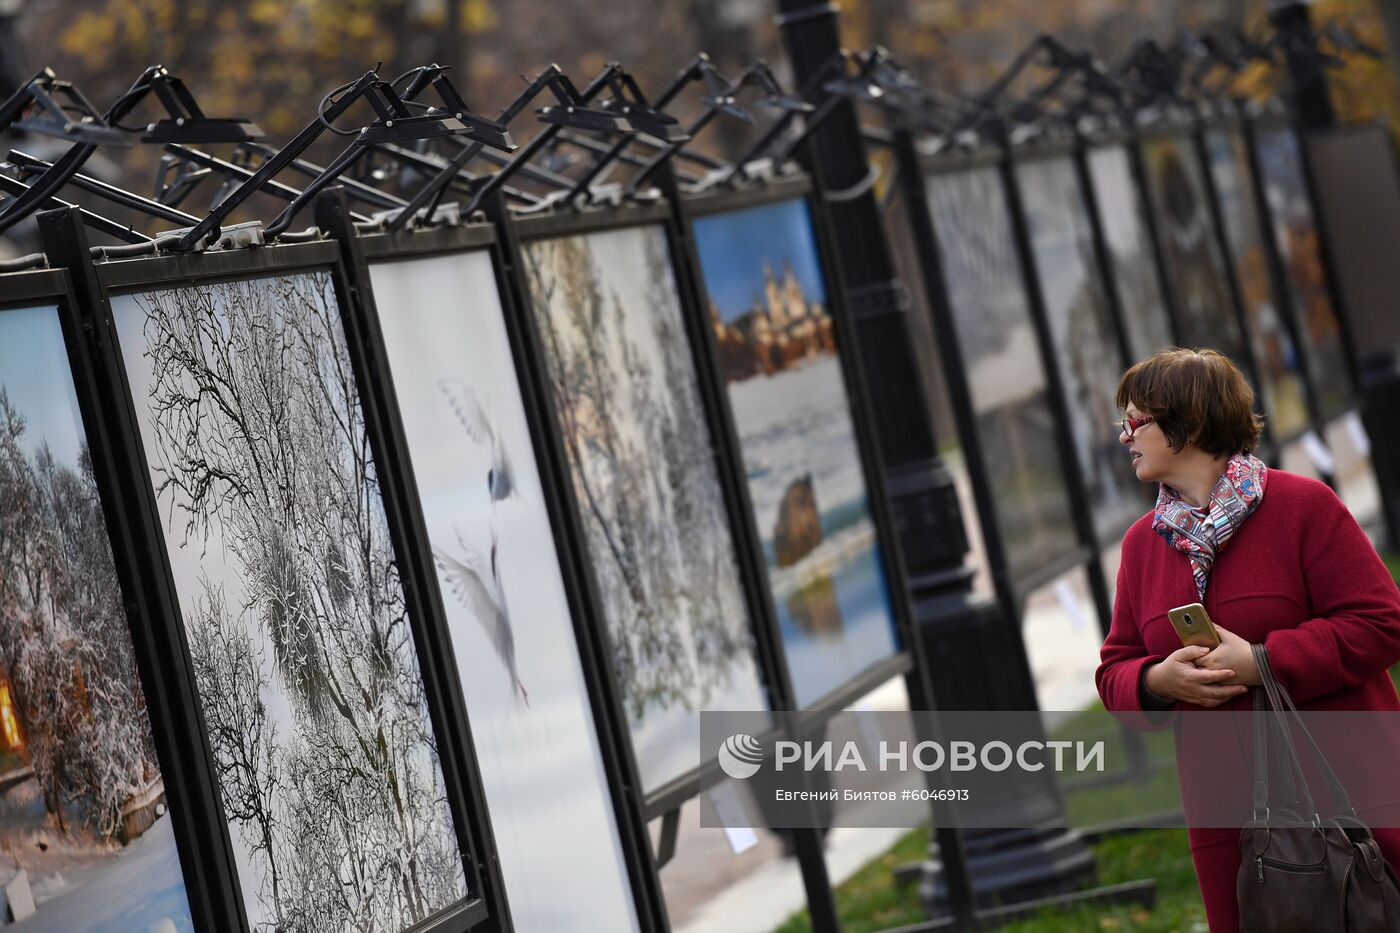 Фотовыставка "Русские сезоны. Соловки" открылась в Москве